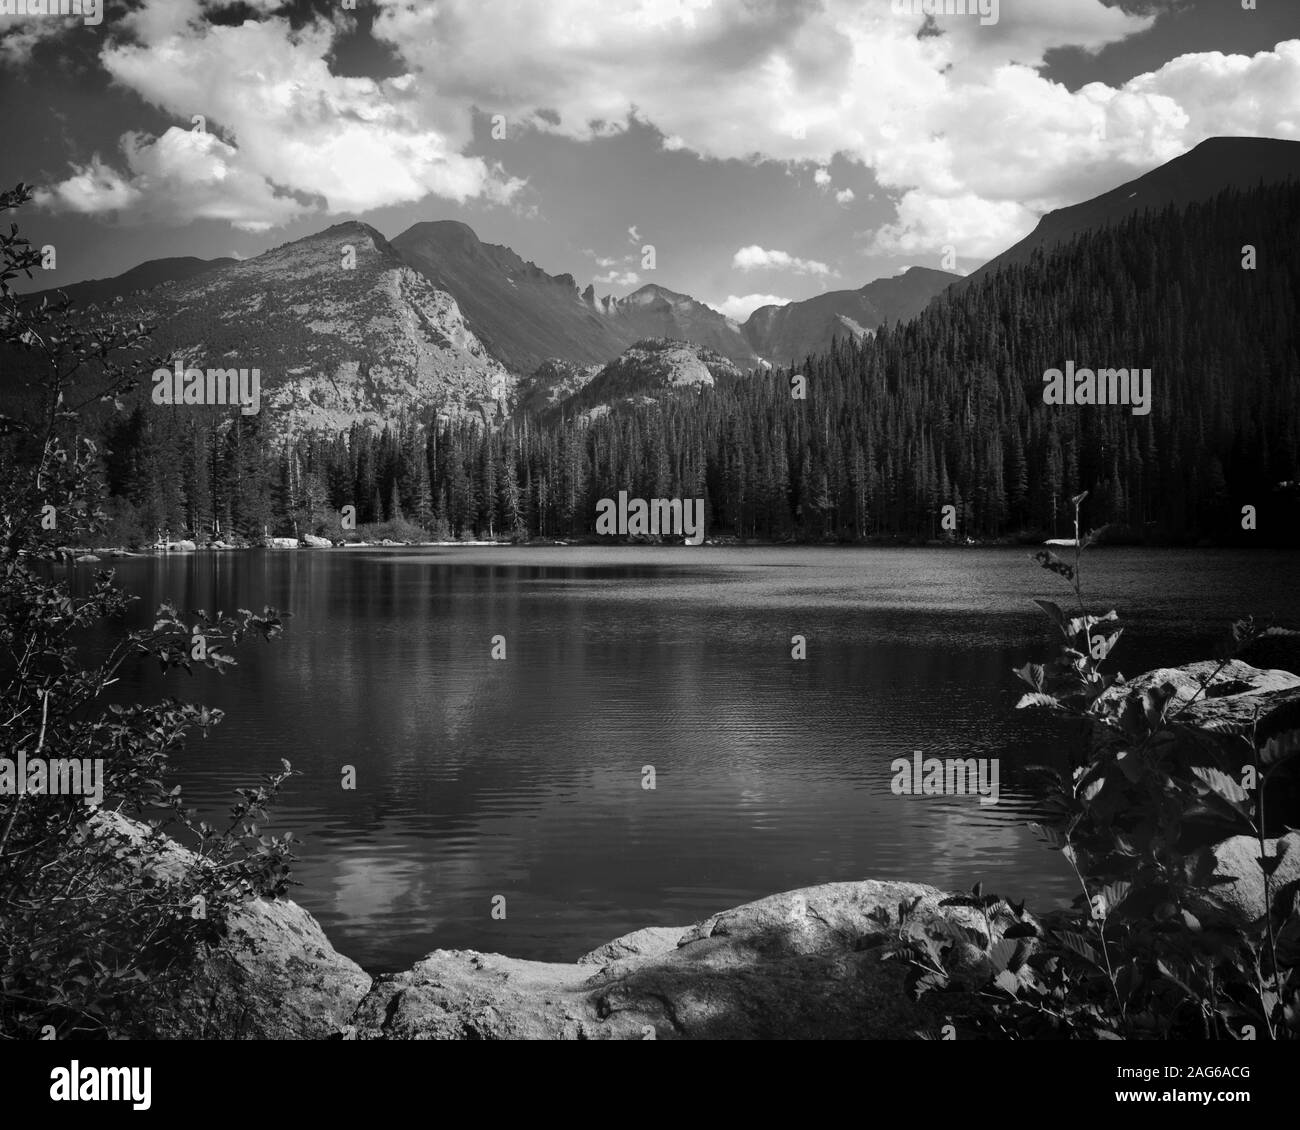 Captura en escala de grises de un hermoso paisaje con un lago rodeado árboles y altas montañas rocosas Foto de stock